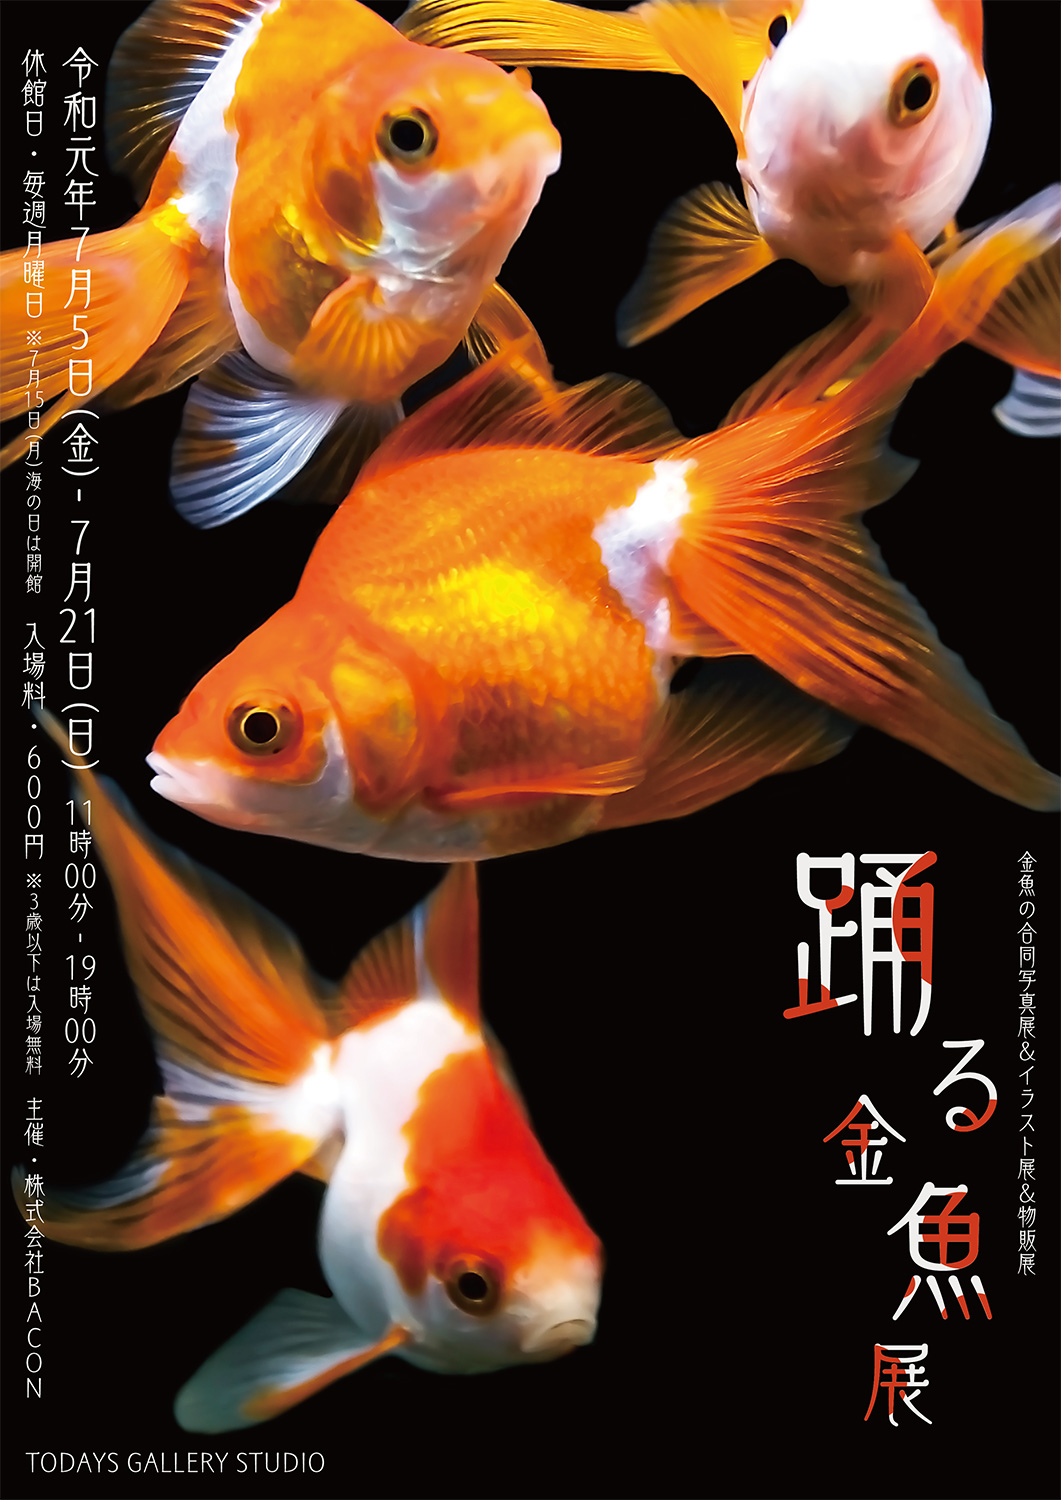 ◆ 宣伝!!宣伝!! ◆　 踊る金魚展 ソライロ刺繍のN子さん金魚デビュー!!